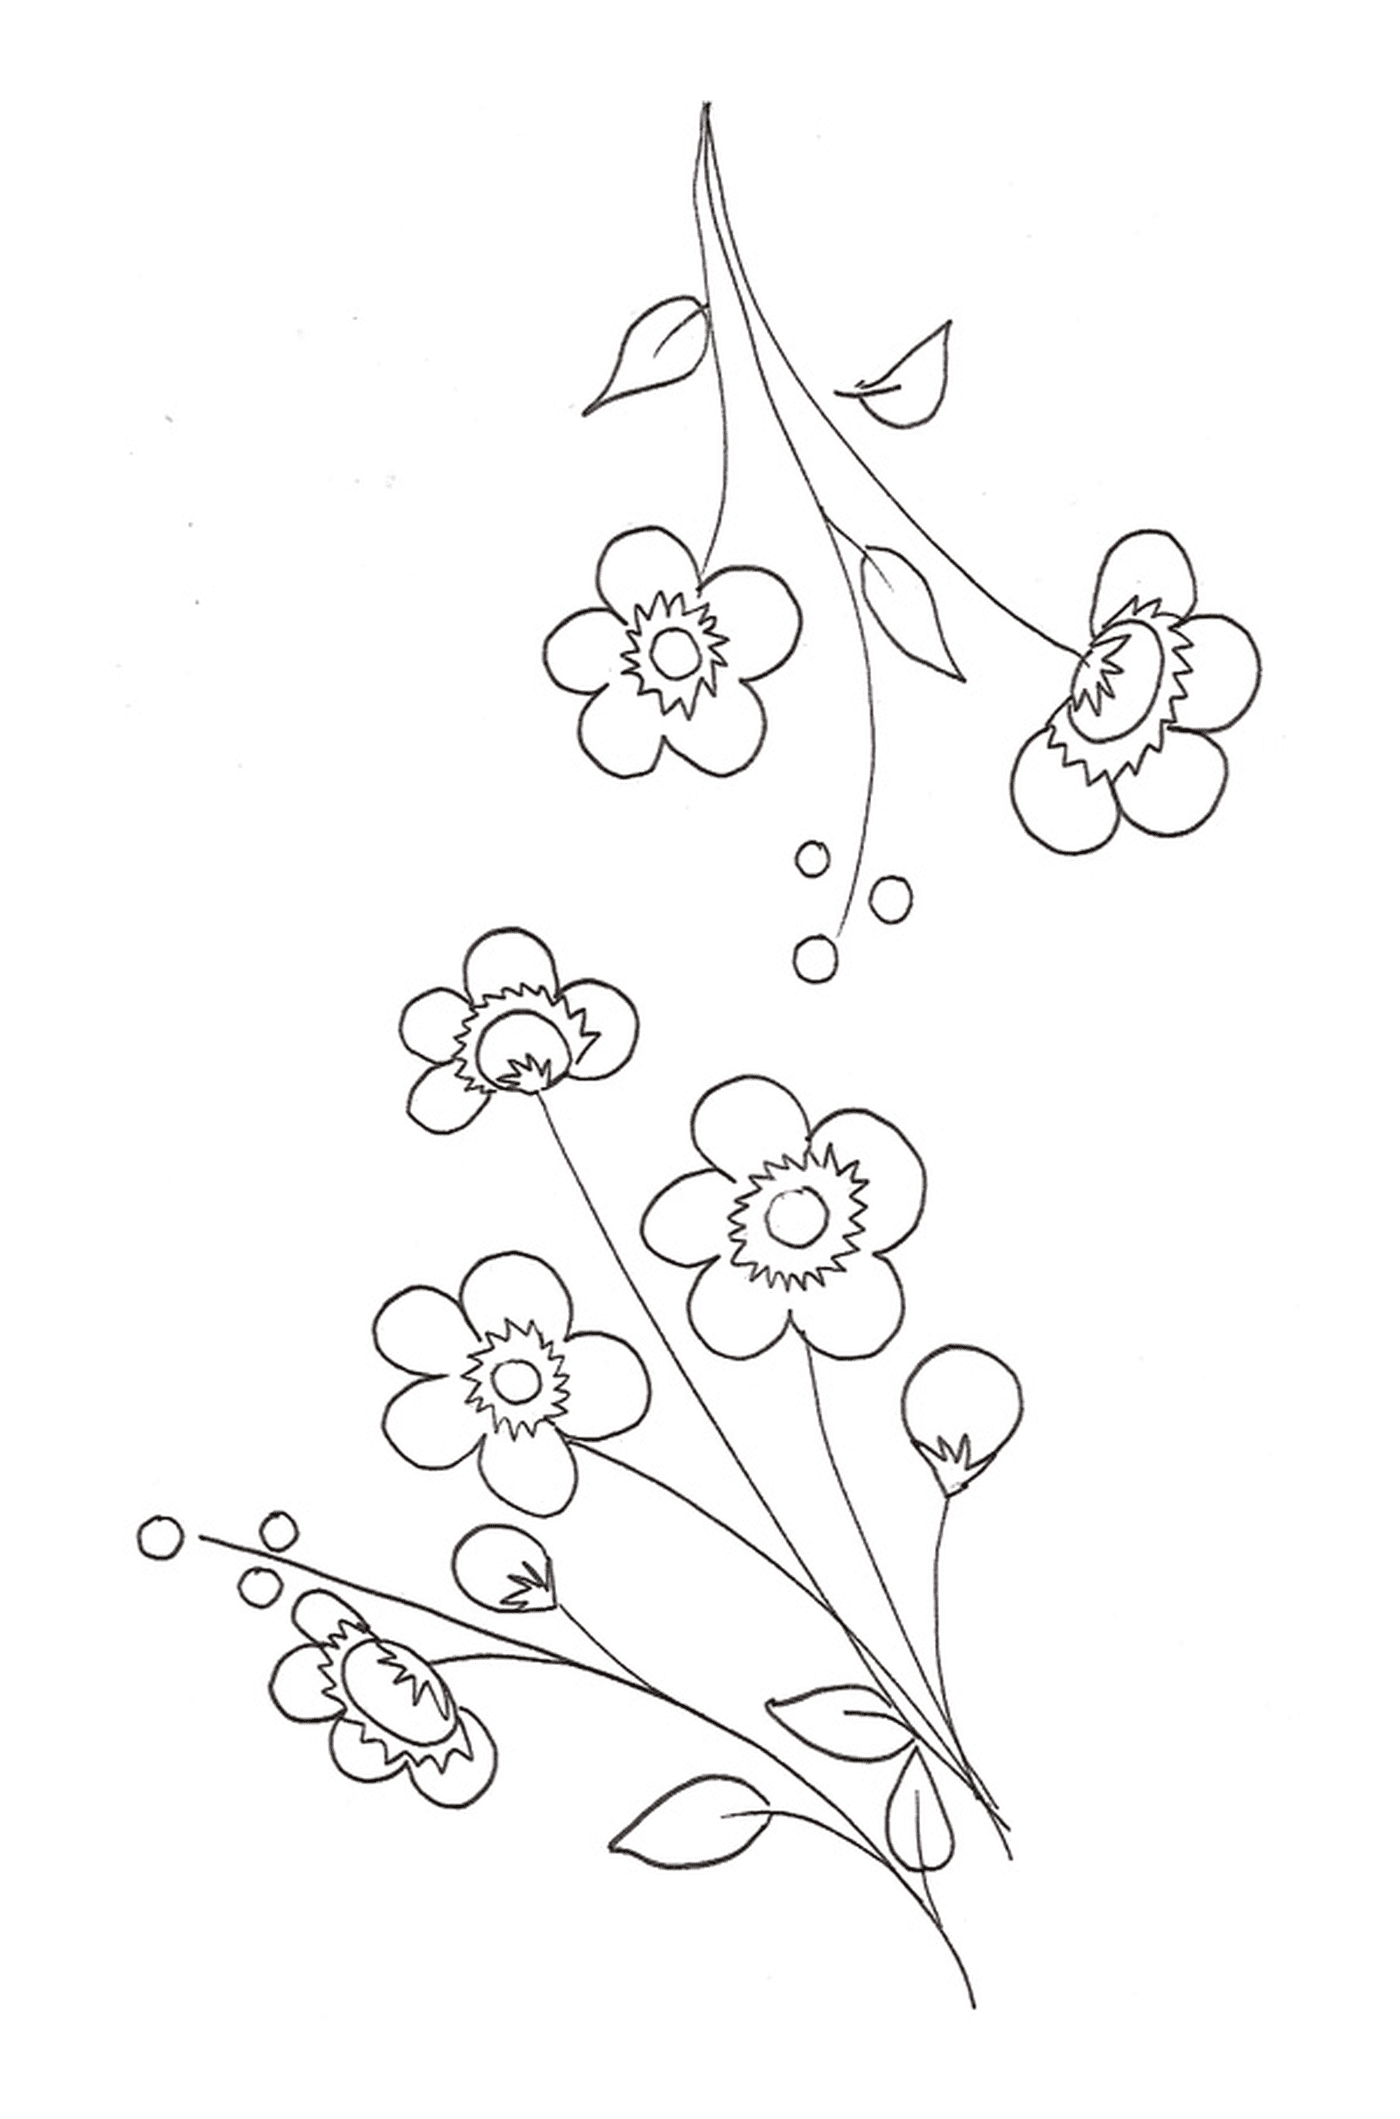  Una flor de cerezo en una línea con un grupo de flores 